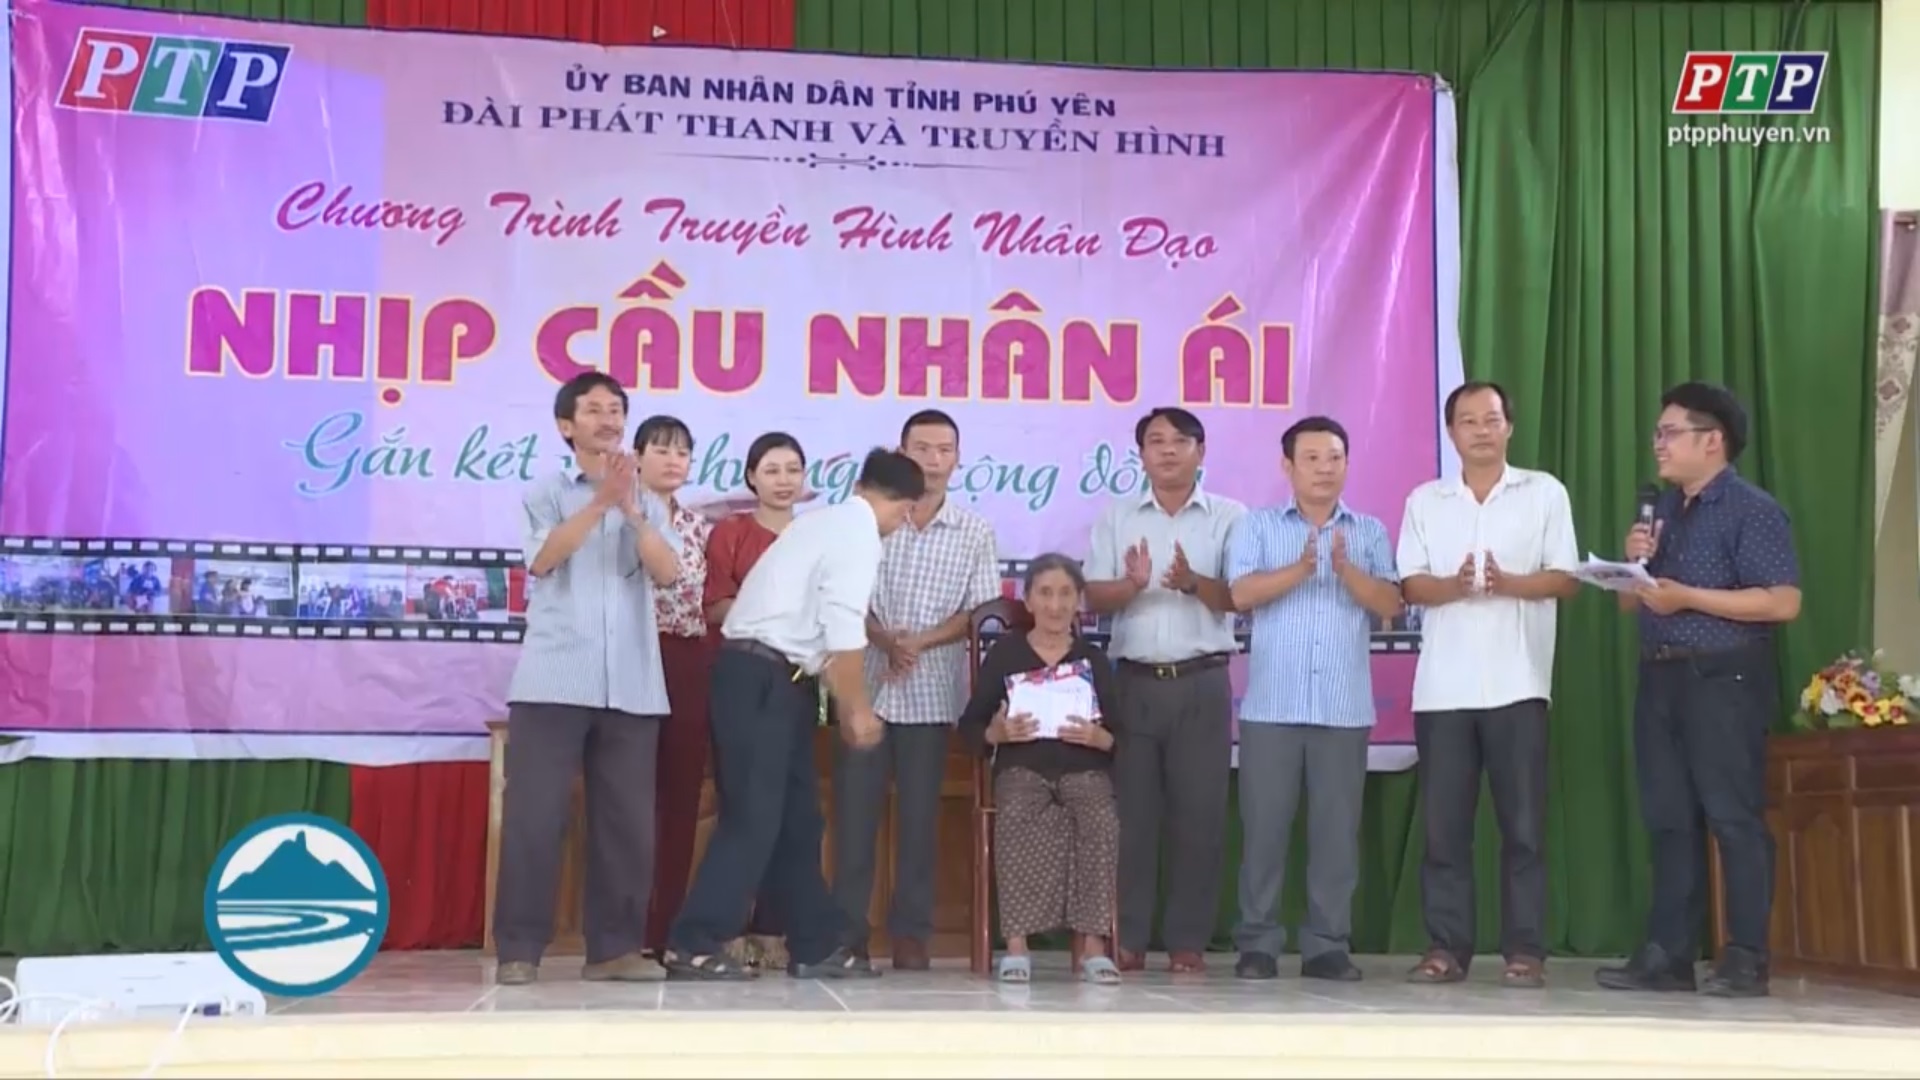 Nhịp cầu Nhân ái kết nối cộng đồng giúp đỡ hoàn cảnh tại xã Xuân Sơn Nam, huyện Đồng Xuân